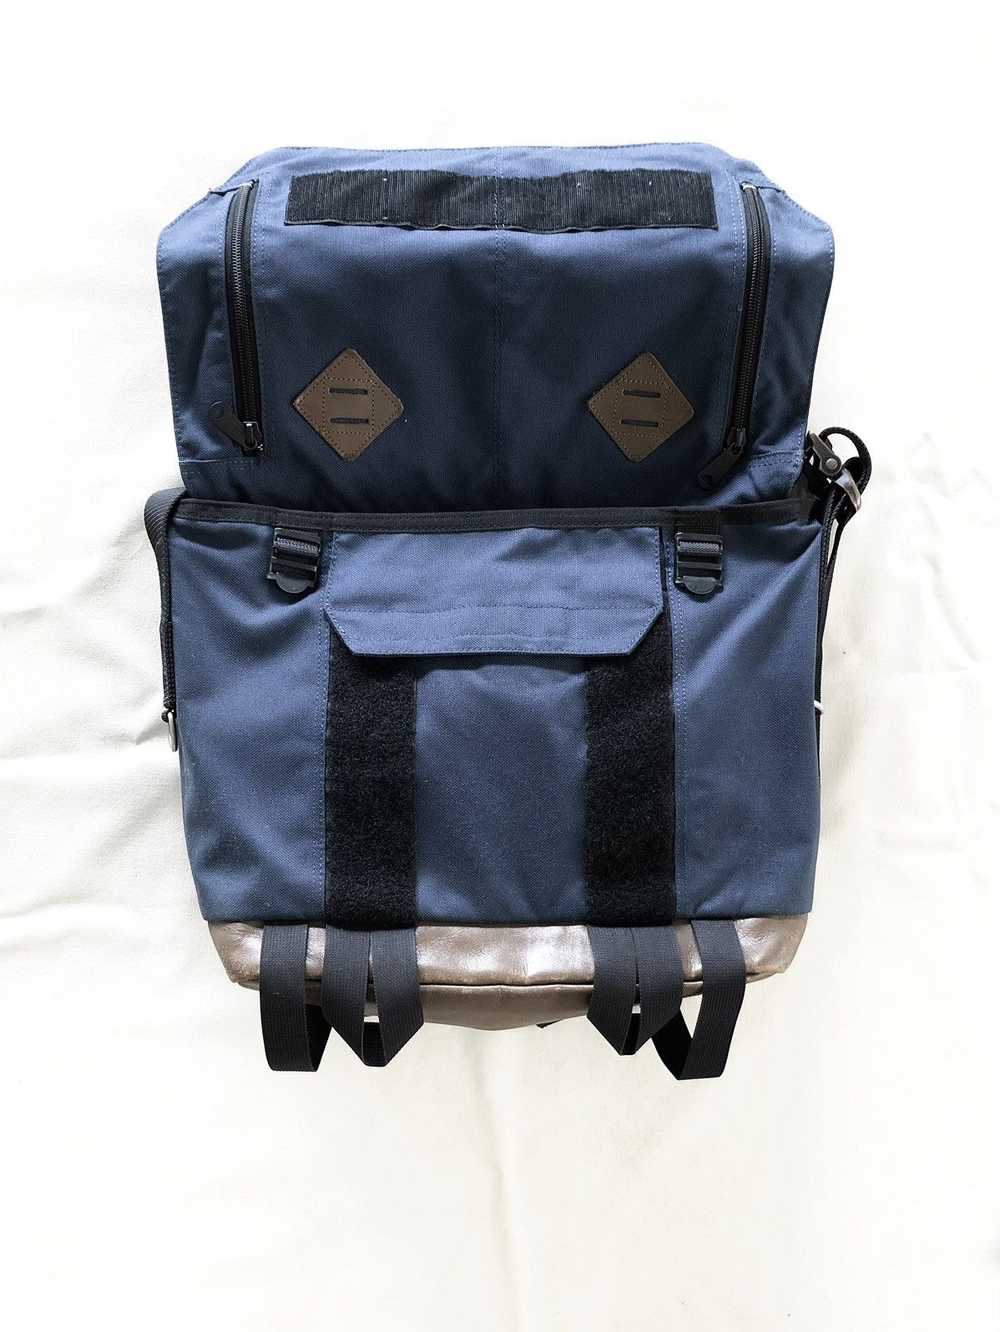 Japanese Brand × Porter porter slingbag - image 2